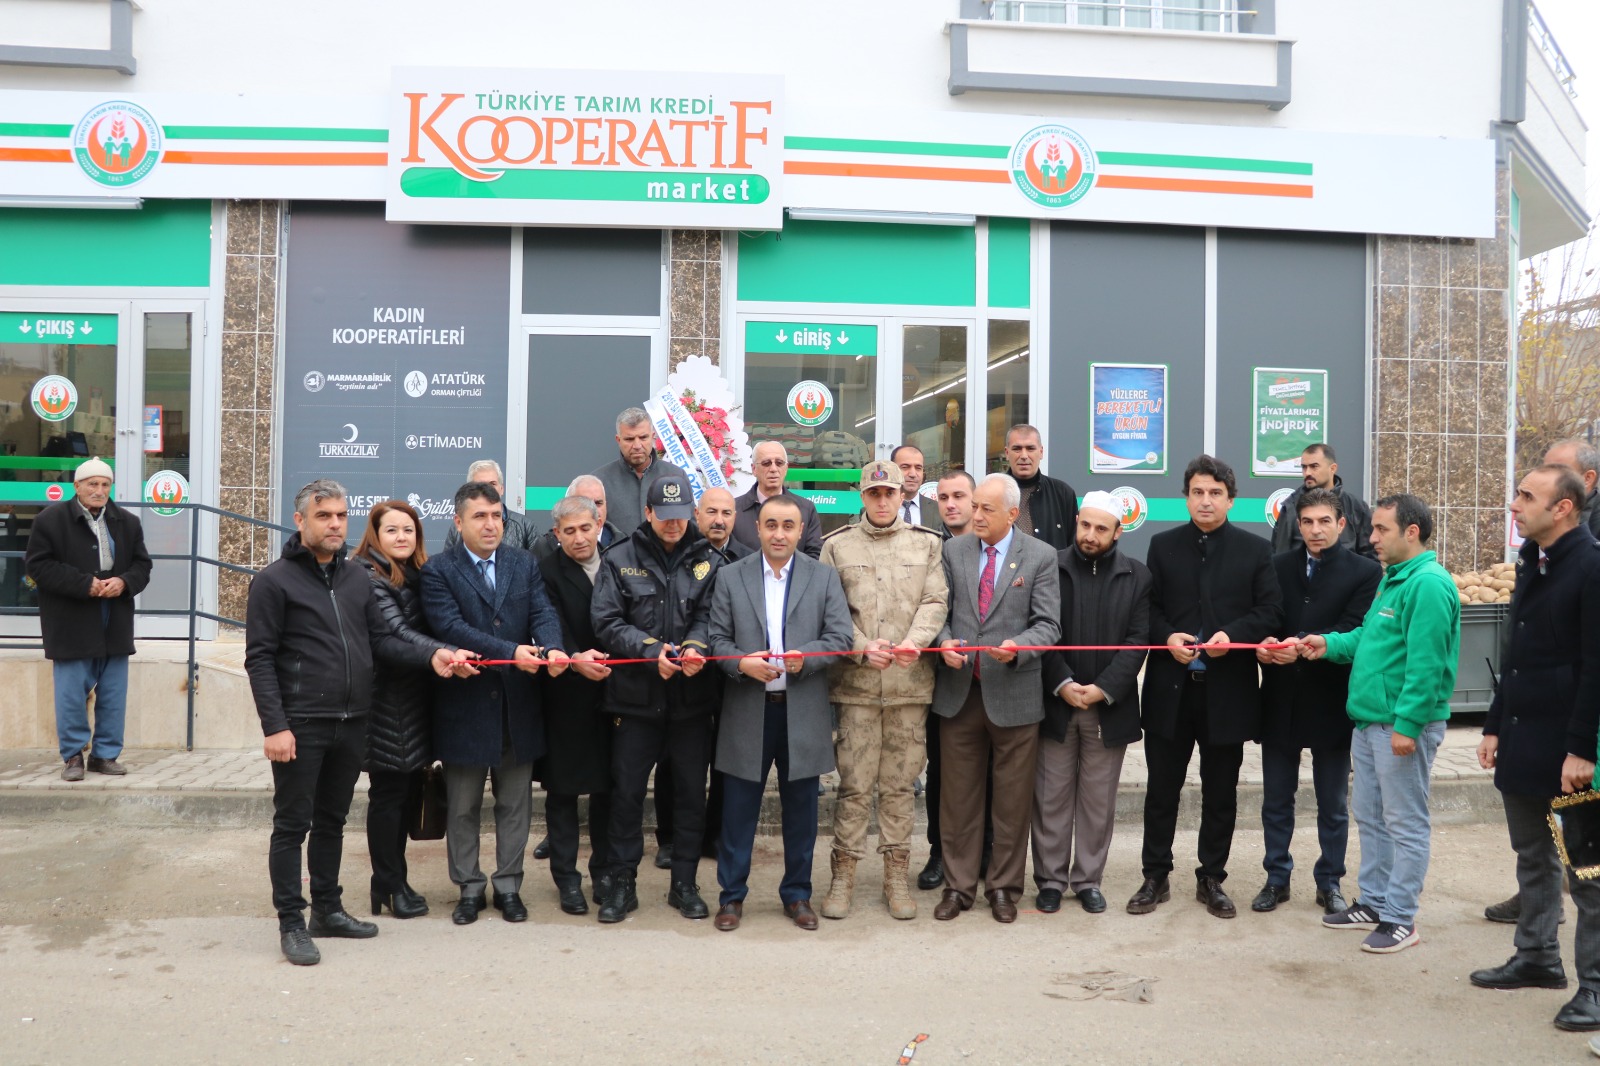 Siirt’in Kurtalan İlçesinde Tarım Kredi Kooperatifleri Mağazası Açıldı